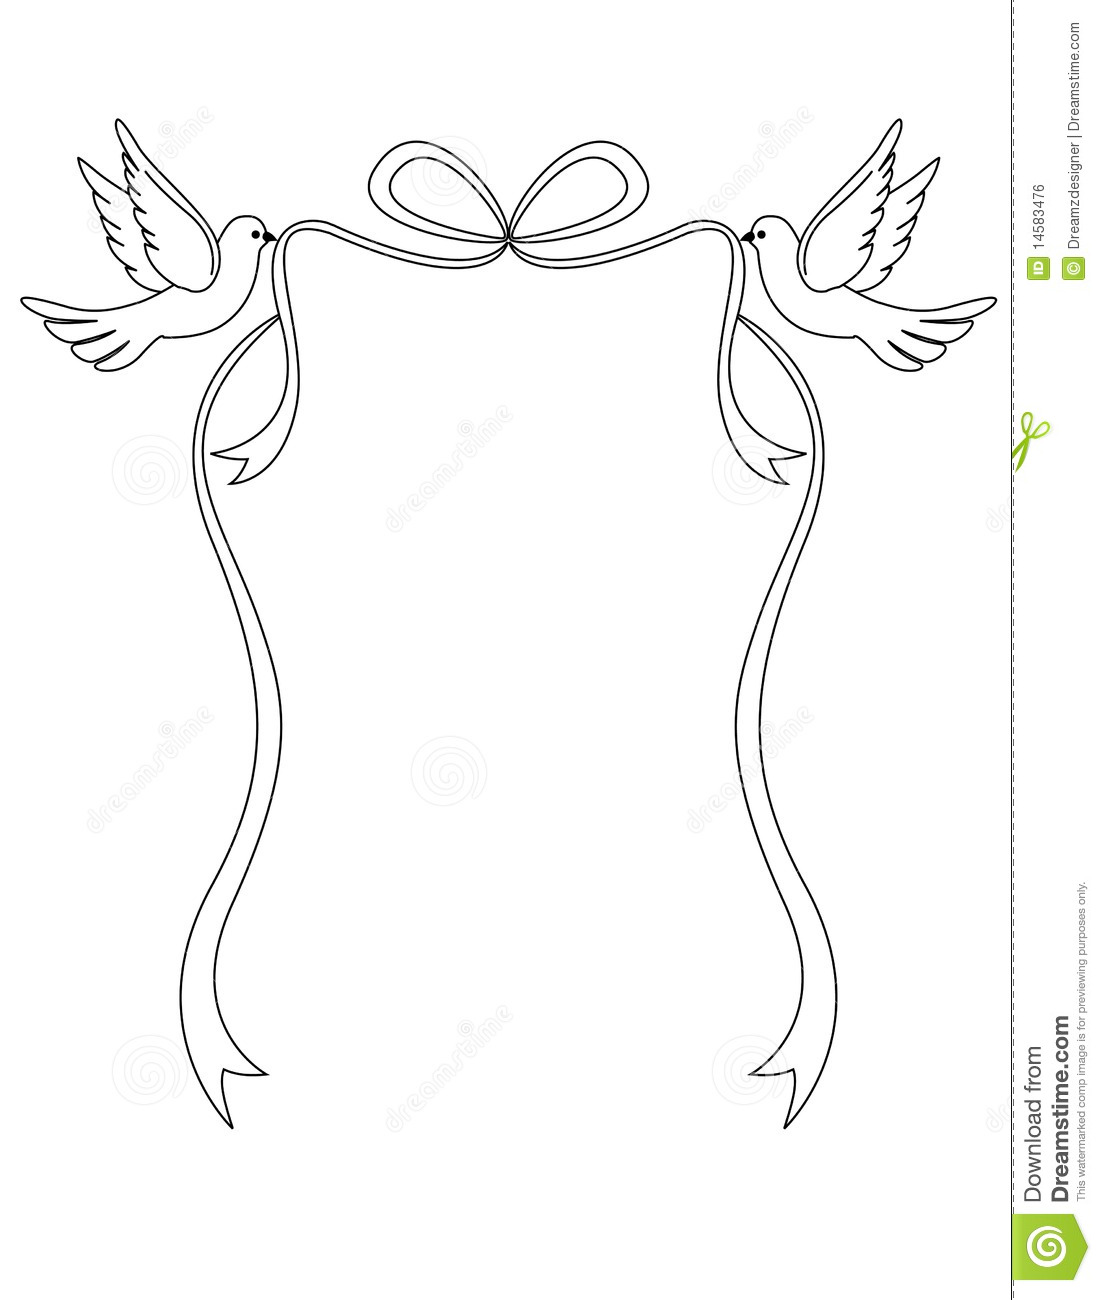 Free Clipart White Doves Wedding Pair Of Love Doves Illustration